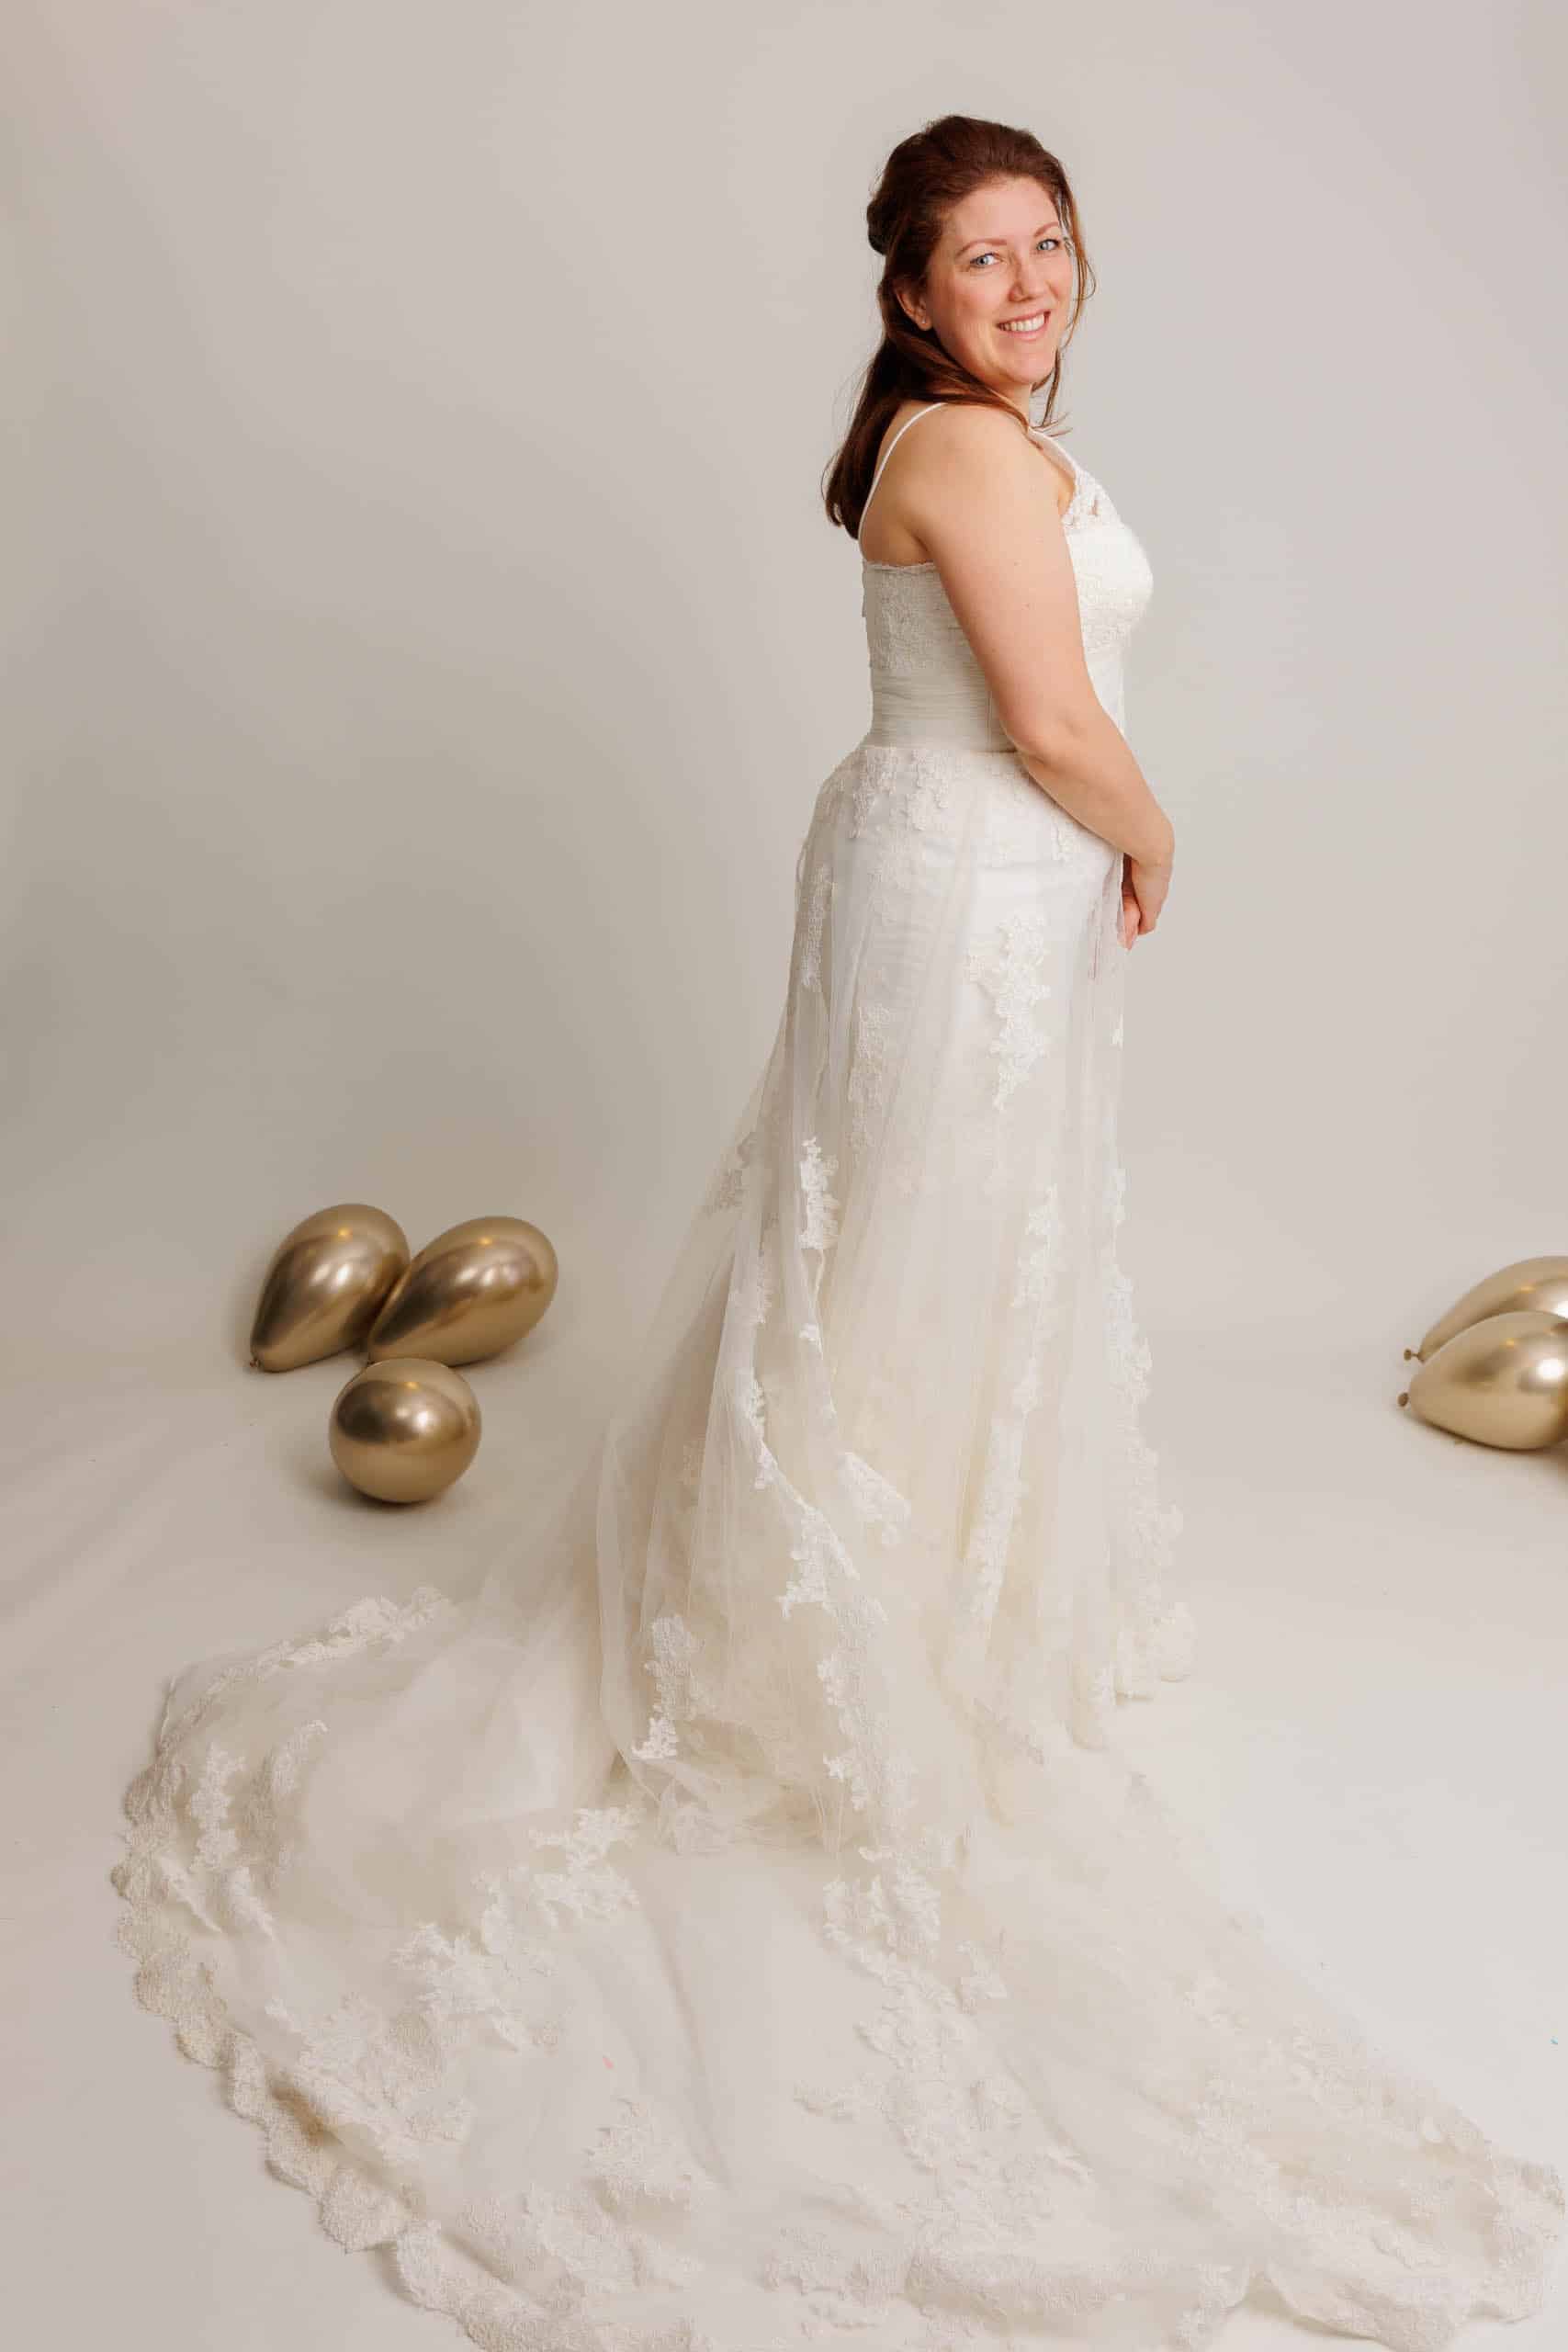 Een vrouw in trouwjurk poseert voor een leuke foto terwijl ze trouwjurken past.